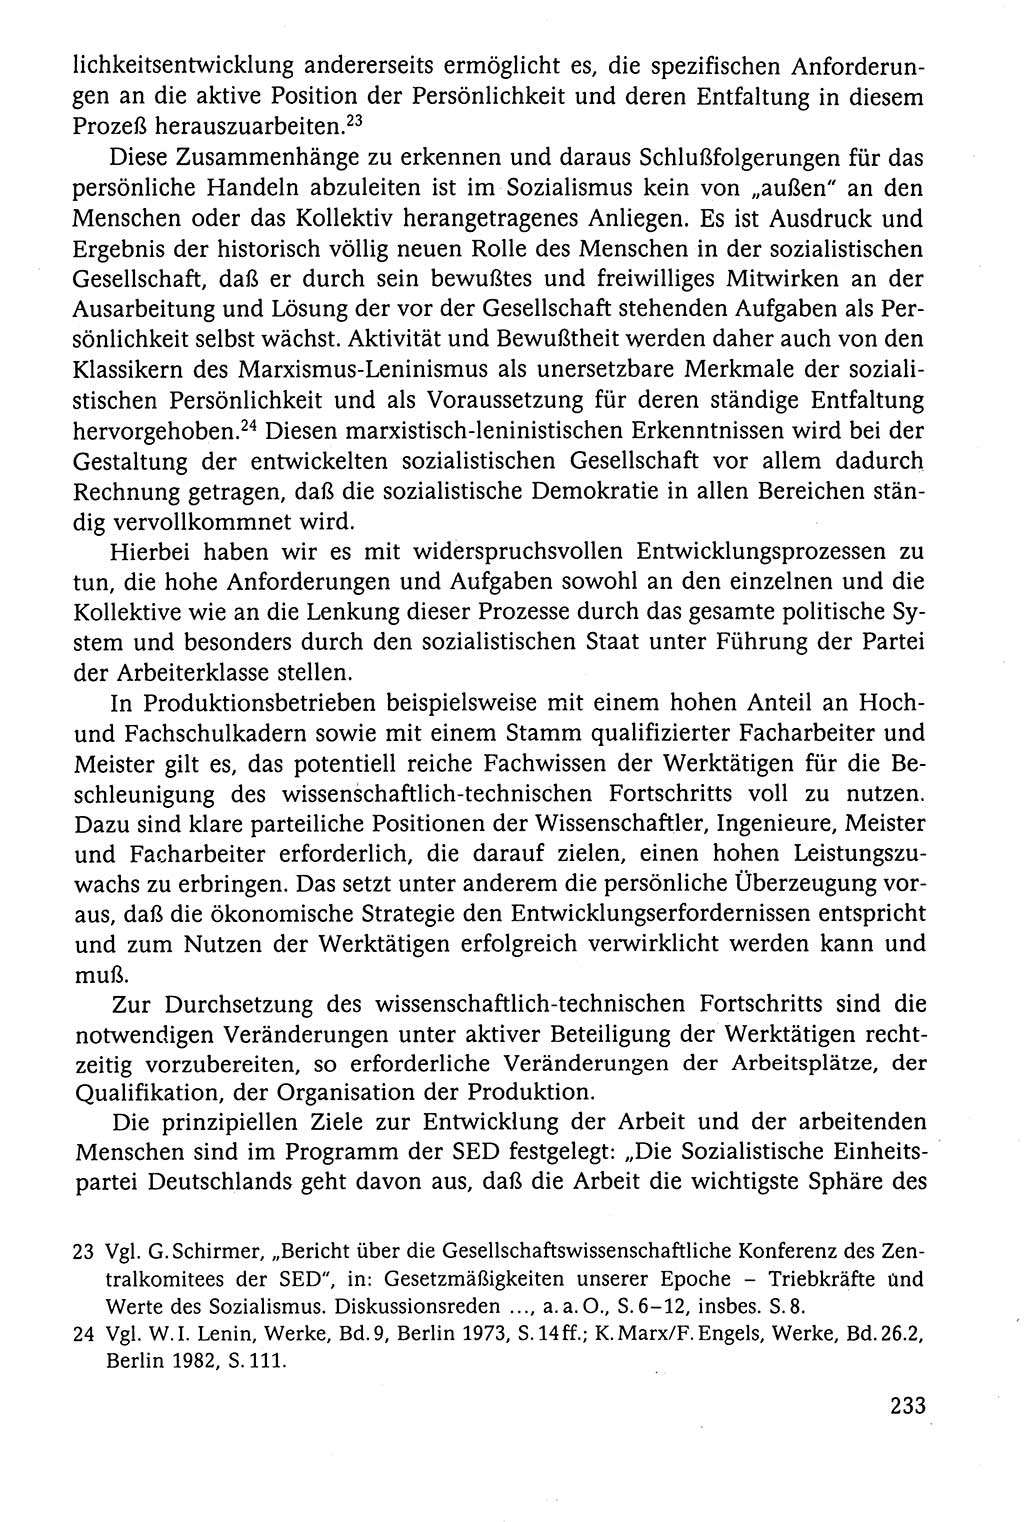 Der Staat im politischen System der DDR (Deutsche Demokratische Republik) 1986, Seite 233 (St. pol. Sys. DDR 1986, S. 233)